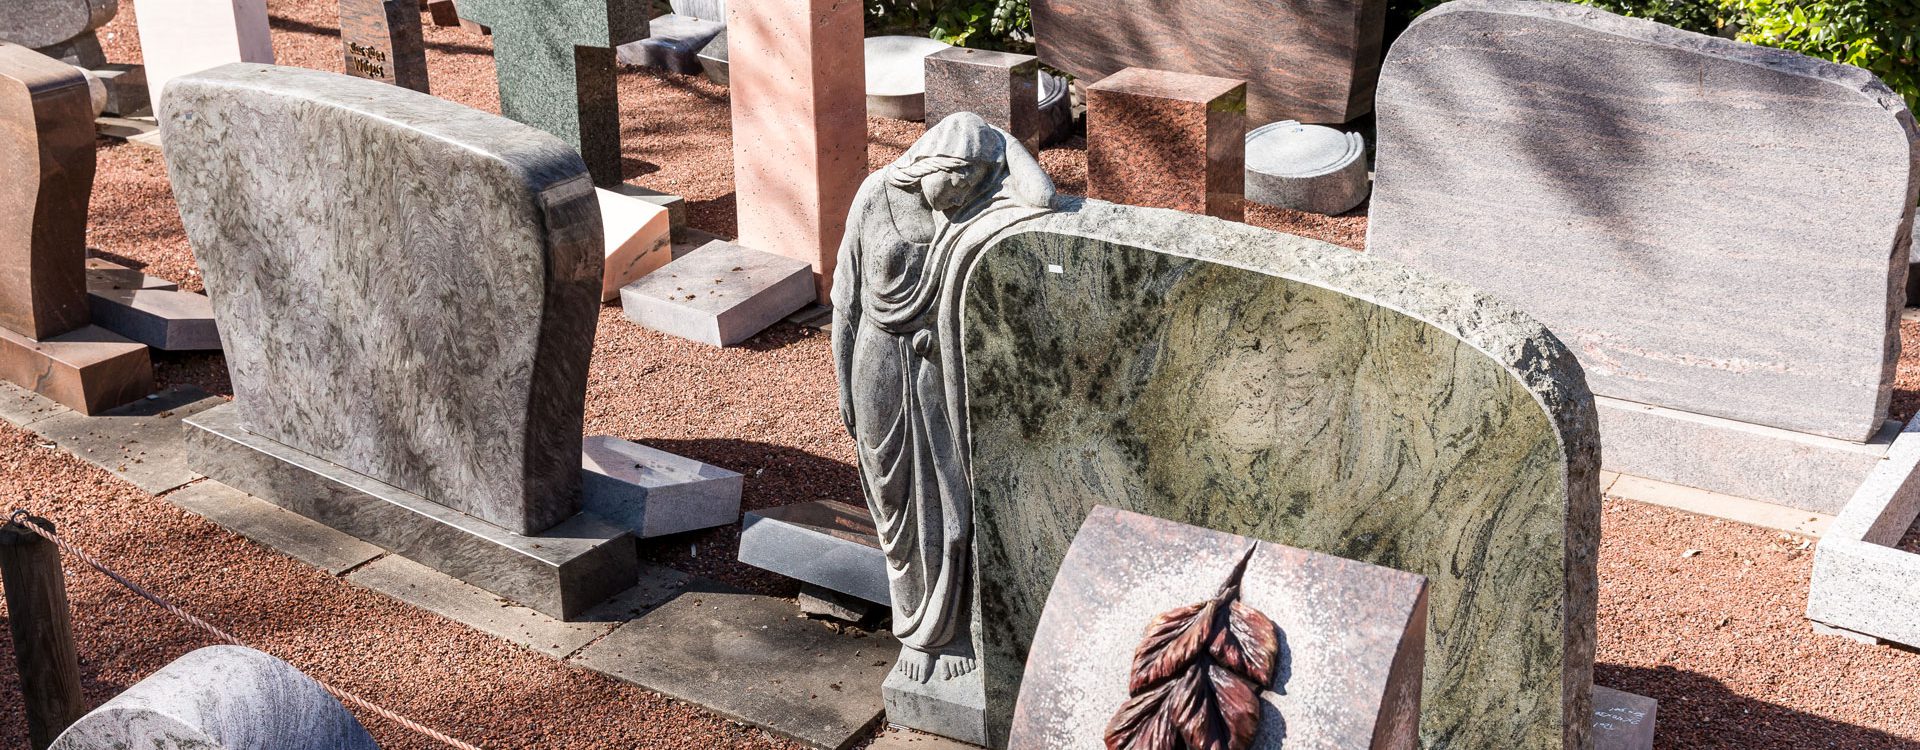 Dez. 2015. Grabsteine auf öffentlichen Friedhöfen dürfen fotografiert und die Aufnahmen online gestellt werden.